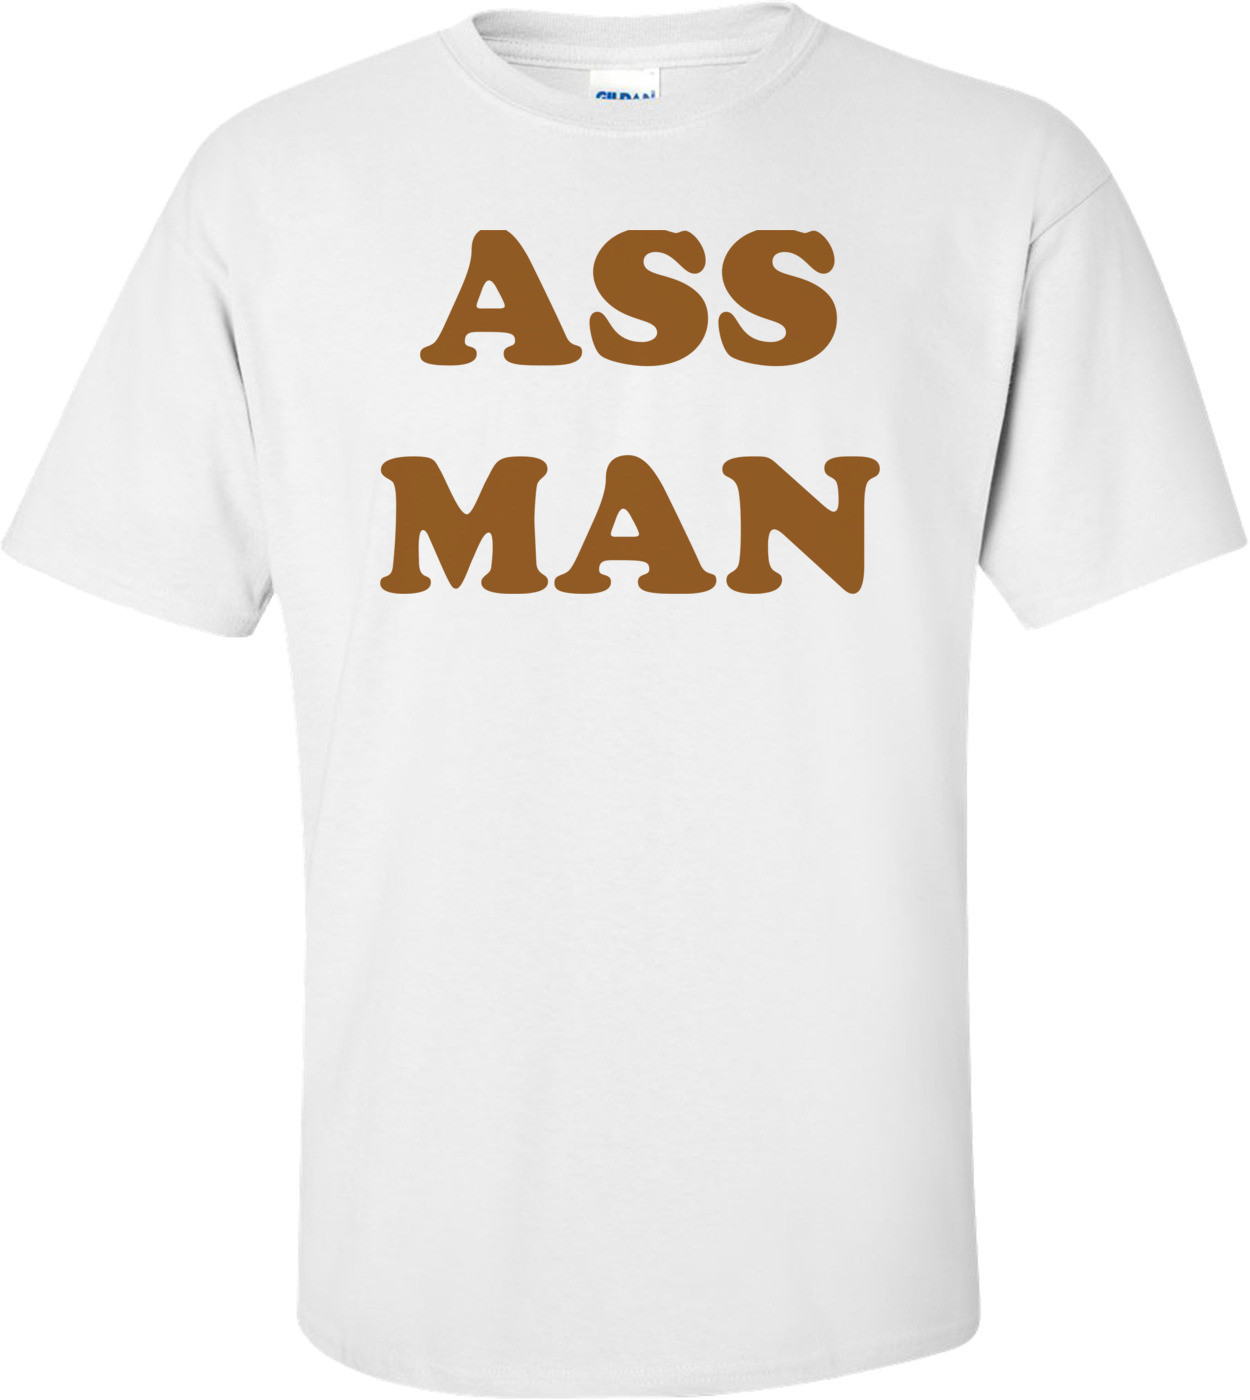 ASS MAN Shirt